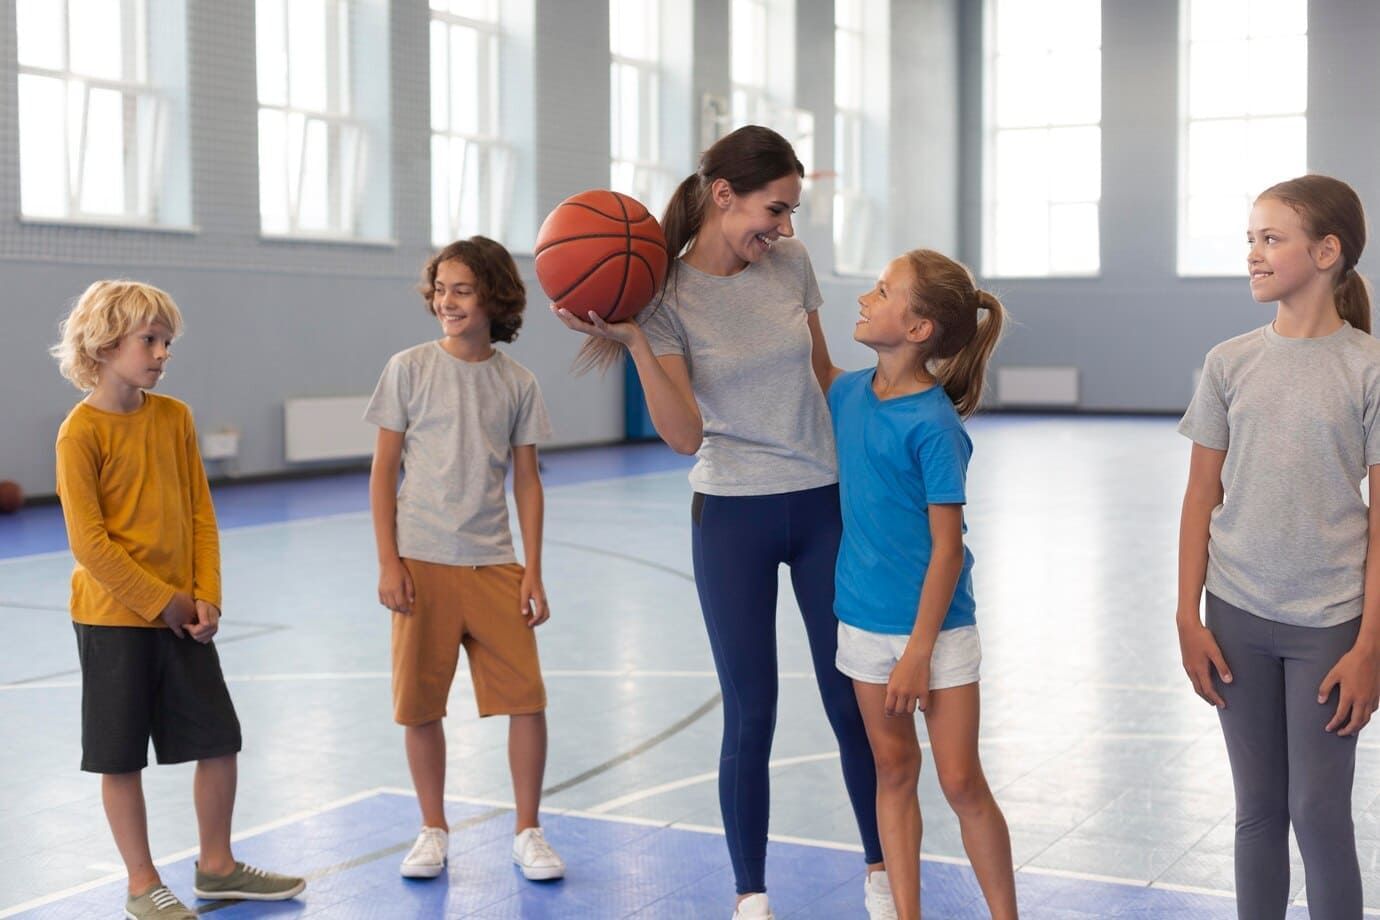 Professora de educação física, dando aula, mulher branca, com cabelo castanho longo, camiseta cinza e calça legging azul, segurando uma bola de basquete, dando aula para 4 alunos, duas meninas e dois meninos.